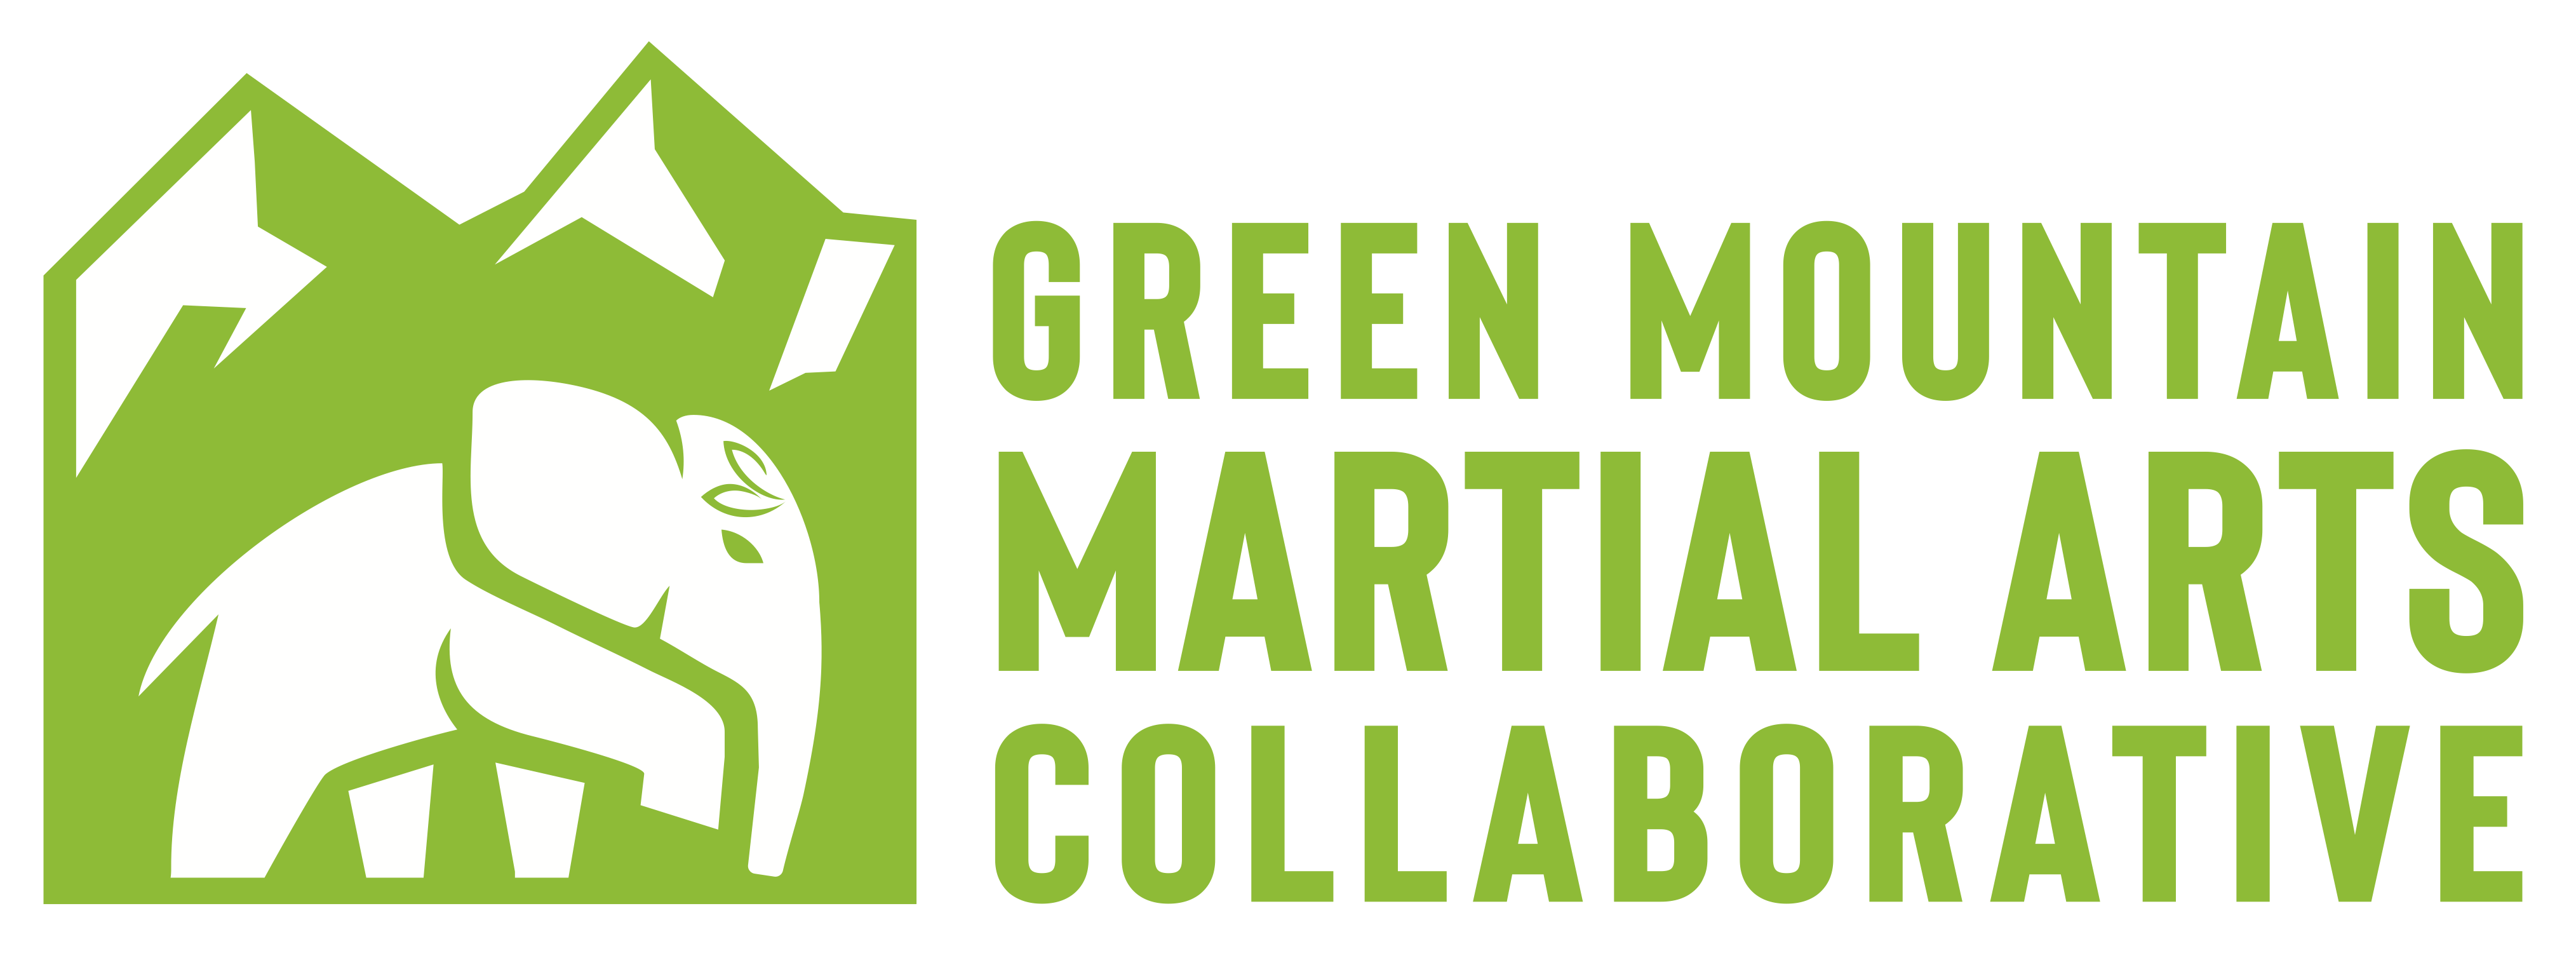 Green Mountain Martial Arts Collaborative